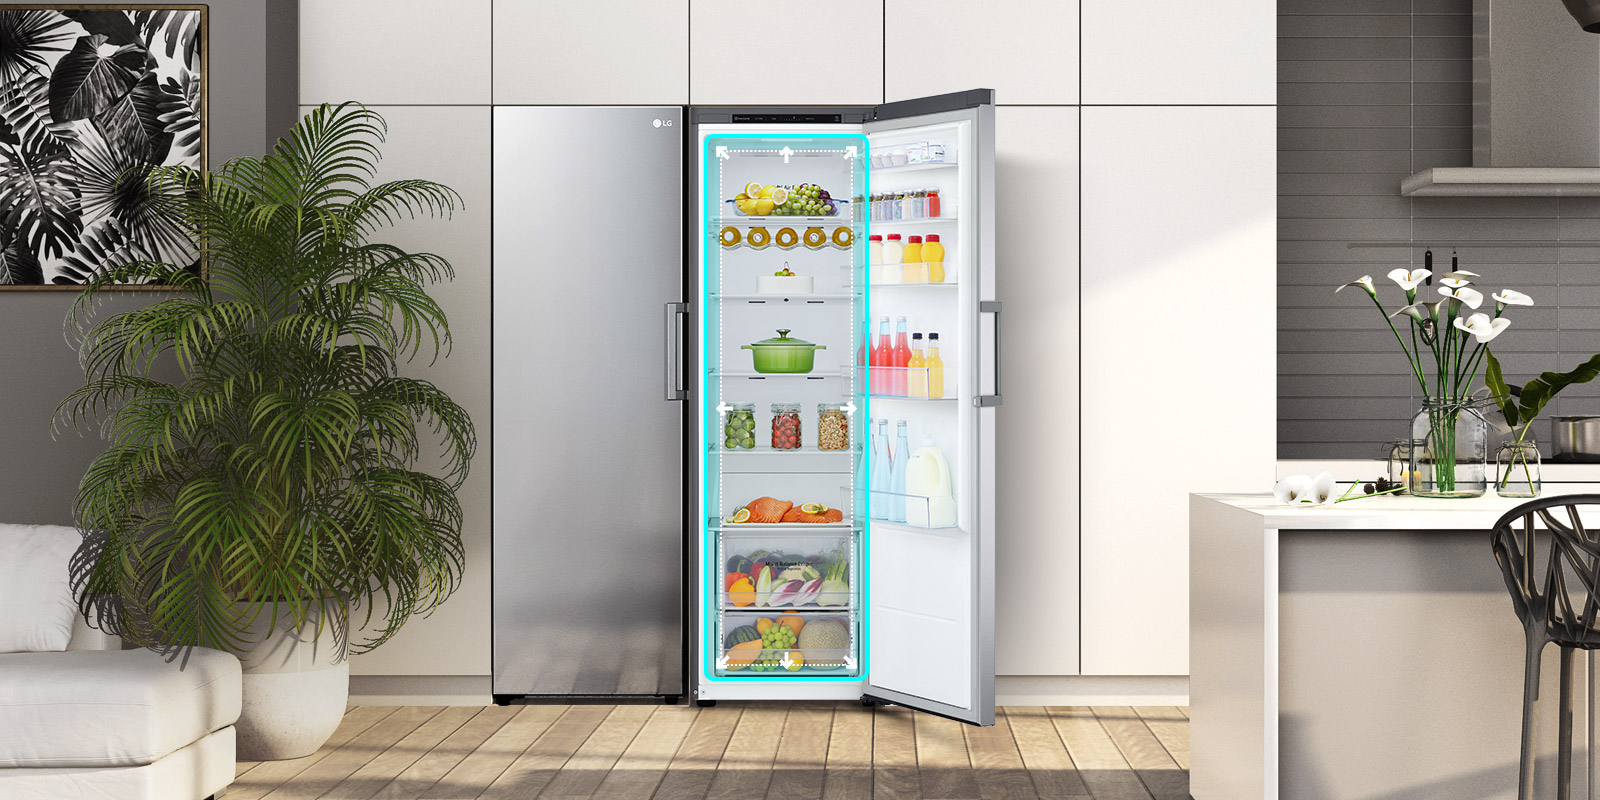 La vista frontal del frigorífico se muestra en una cocina con la puerta abierta y mostrando los productos en el interior. Un cuadrado azul resalta el interior con flechas señalando su amplio espacio interior.